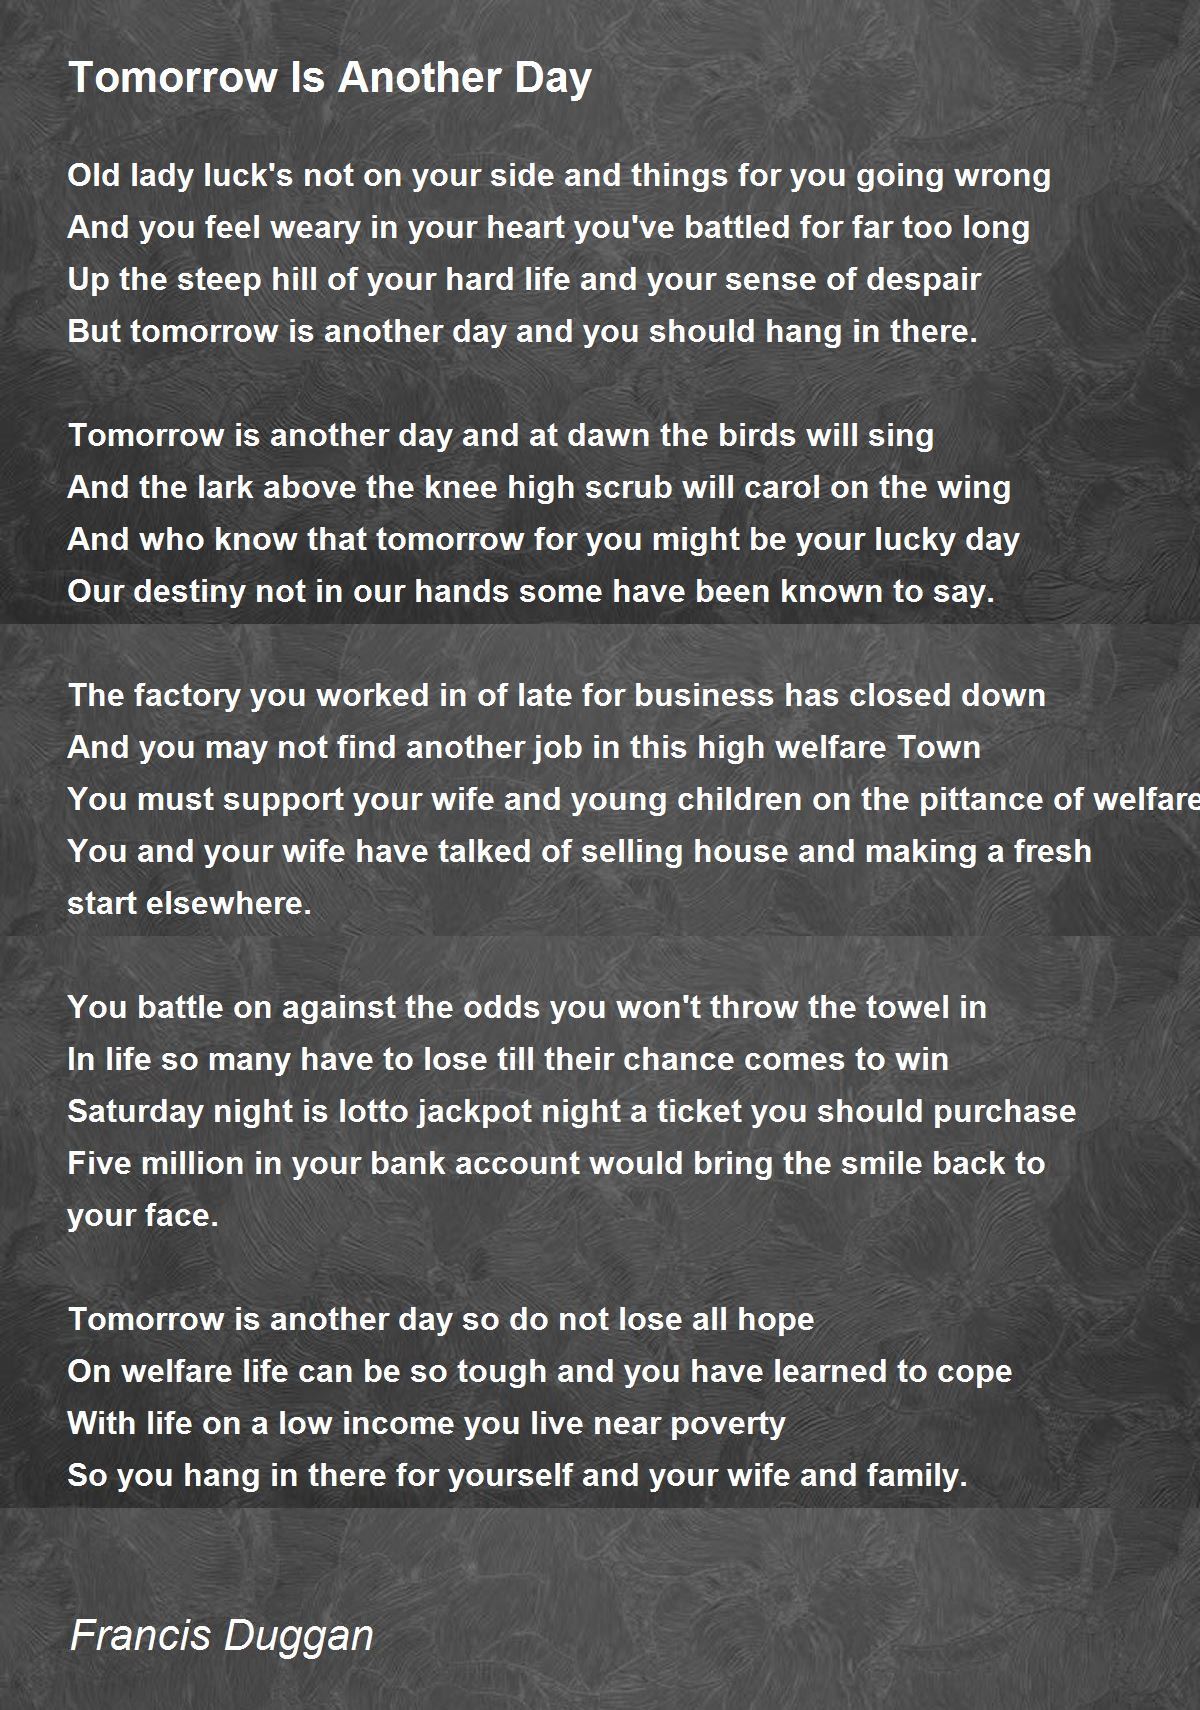 The Day Before Tomorrow - The Day Before Tomorrow Poem by Tyro Twee